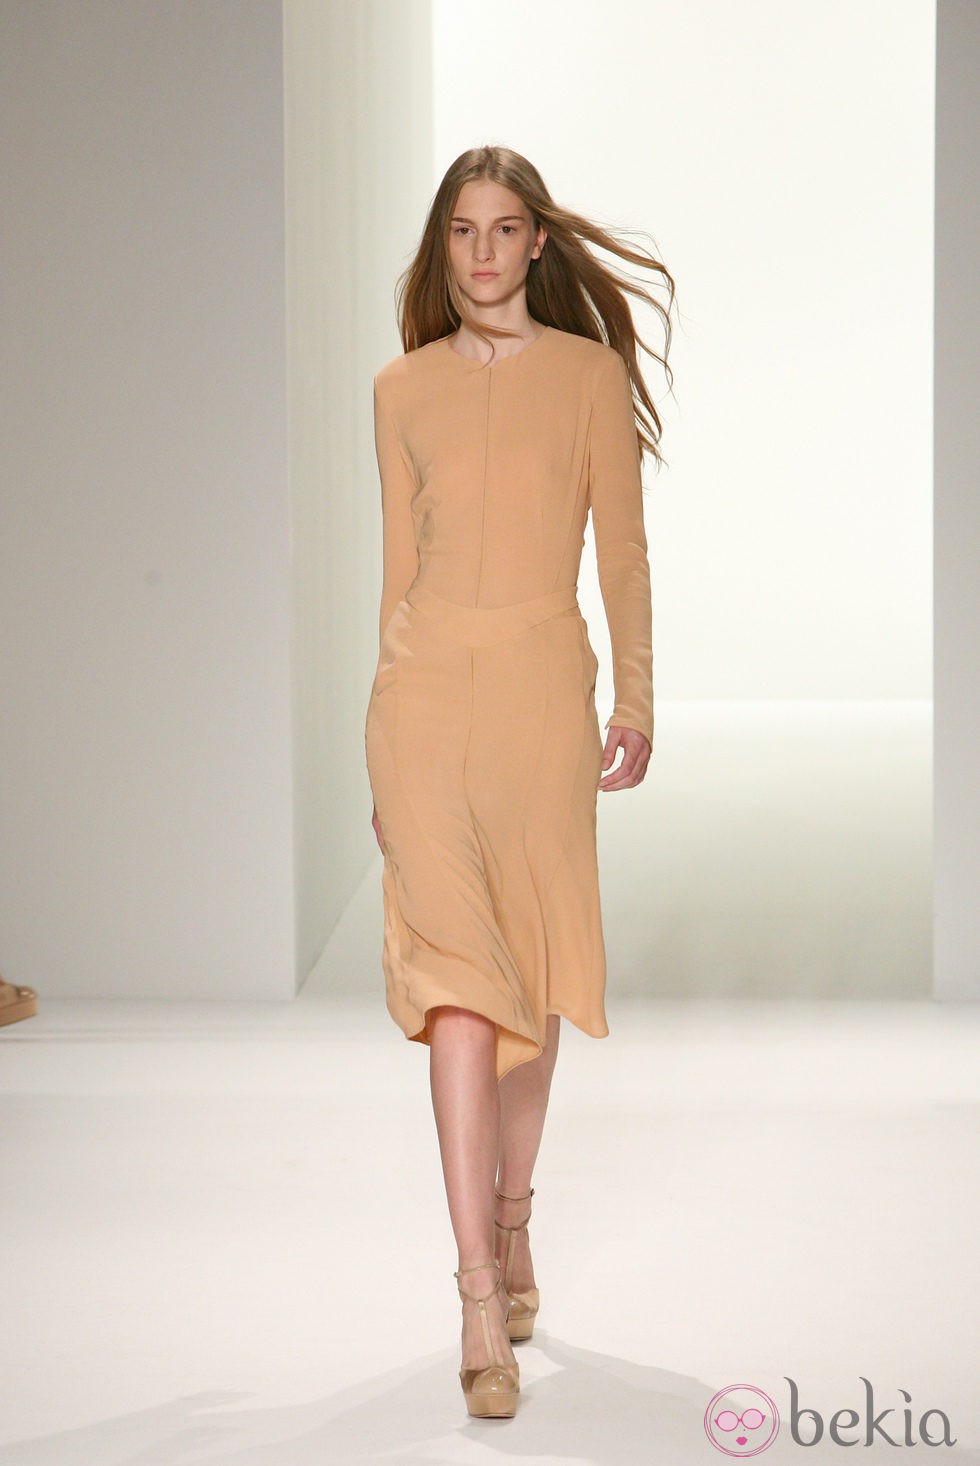 Vestido color arena de Calvin Klein, colección primavera de 2012